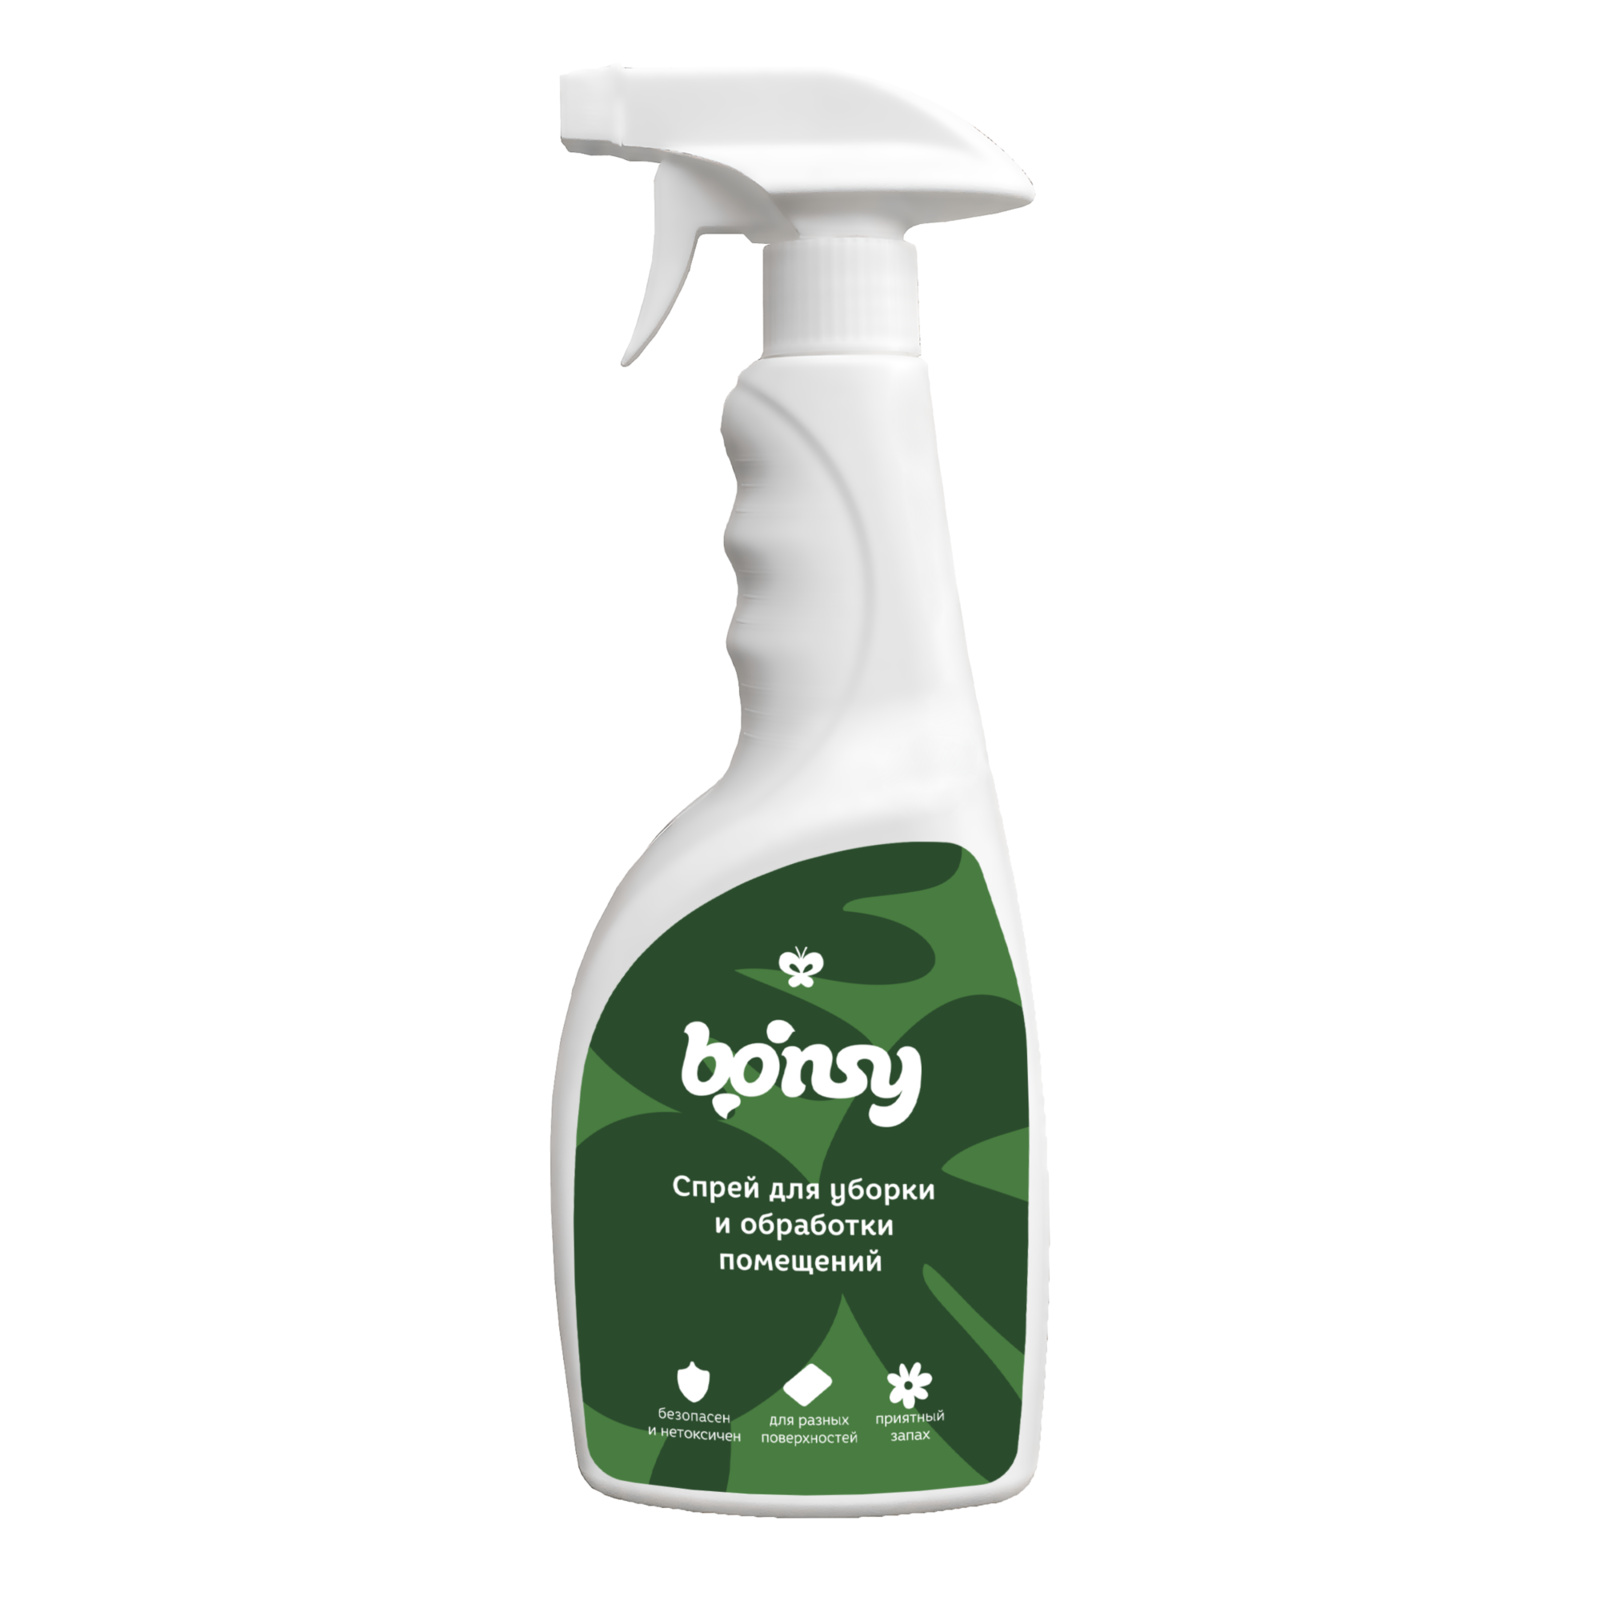 Bonsy Bonsy спрей-дезинфектор для уборки и обработки помещений (750 г)